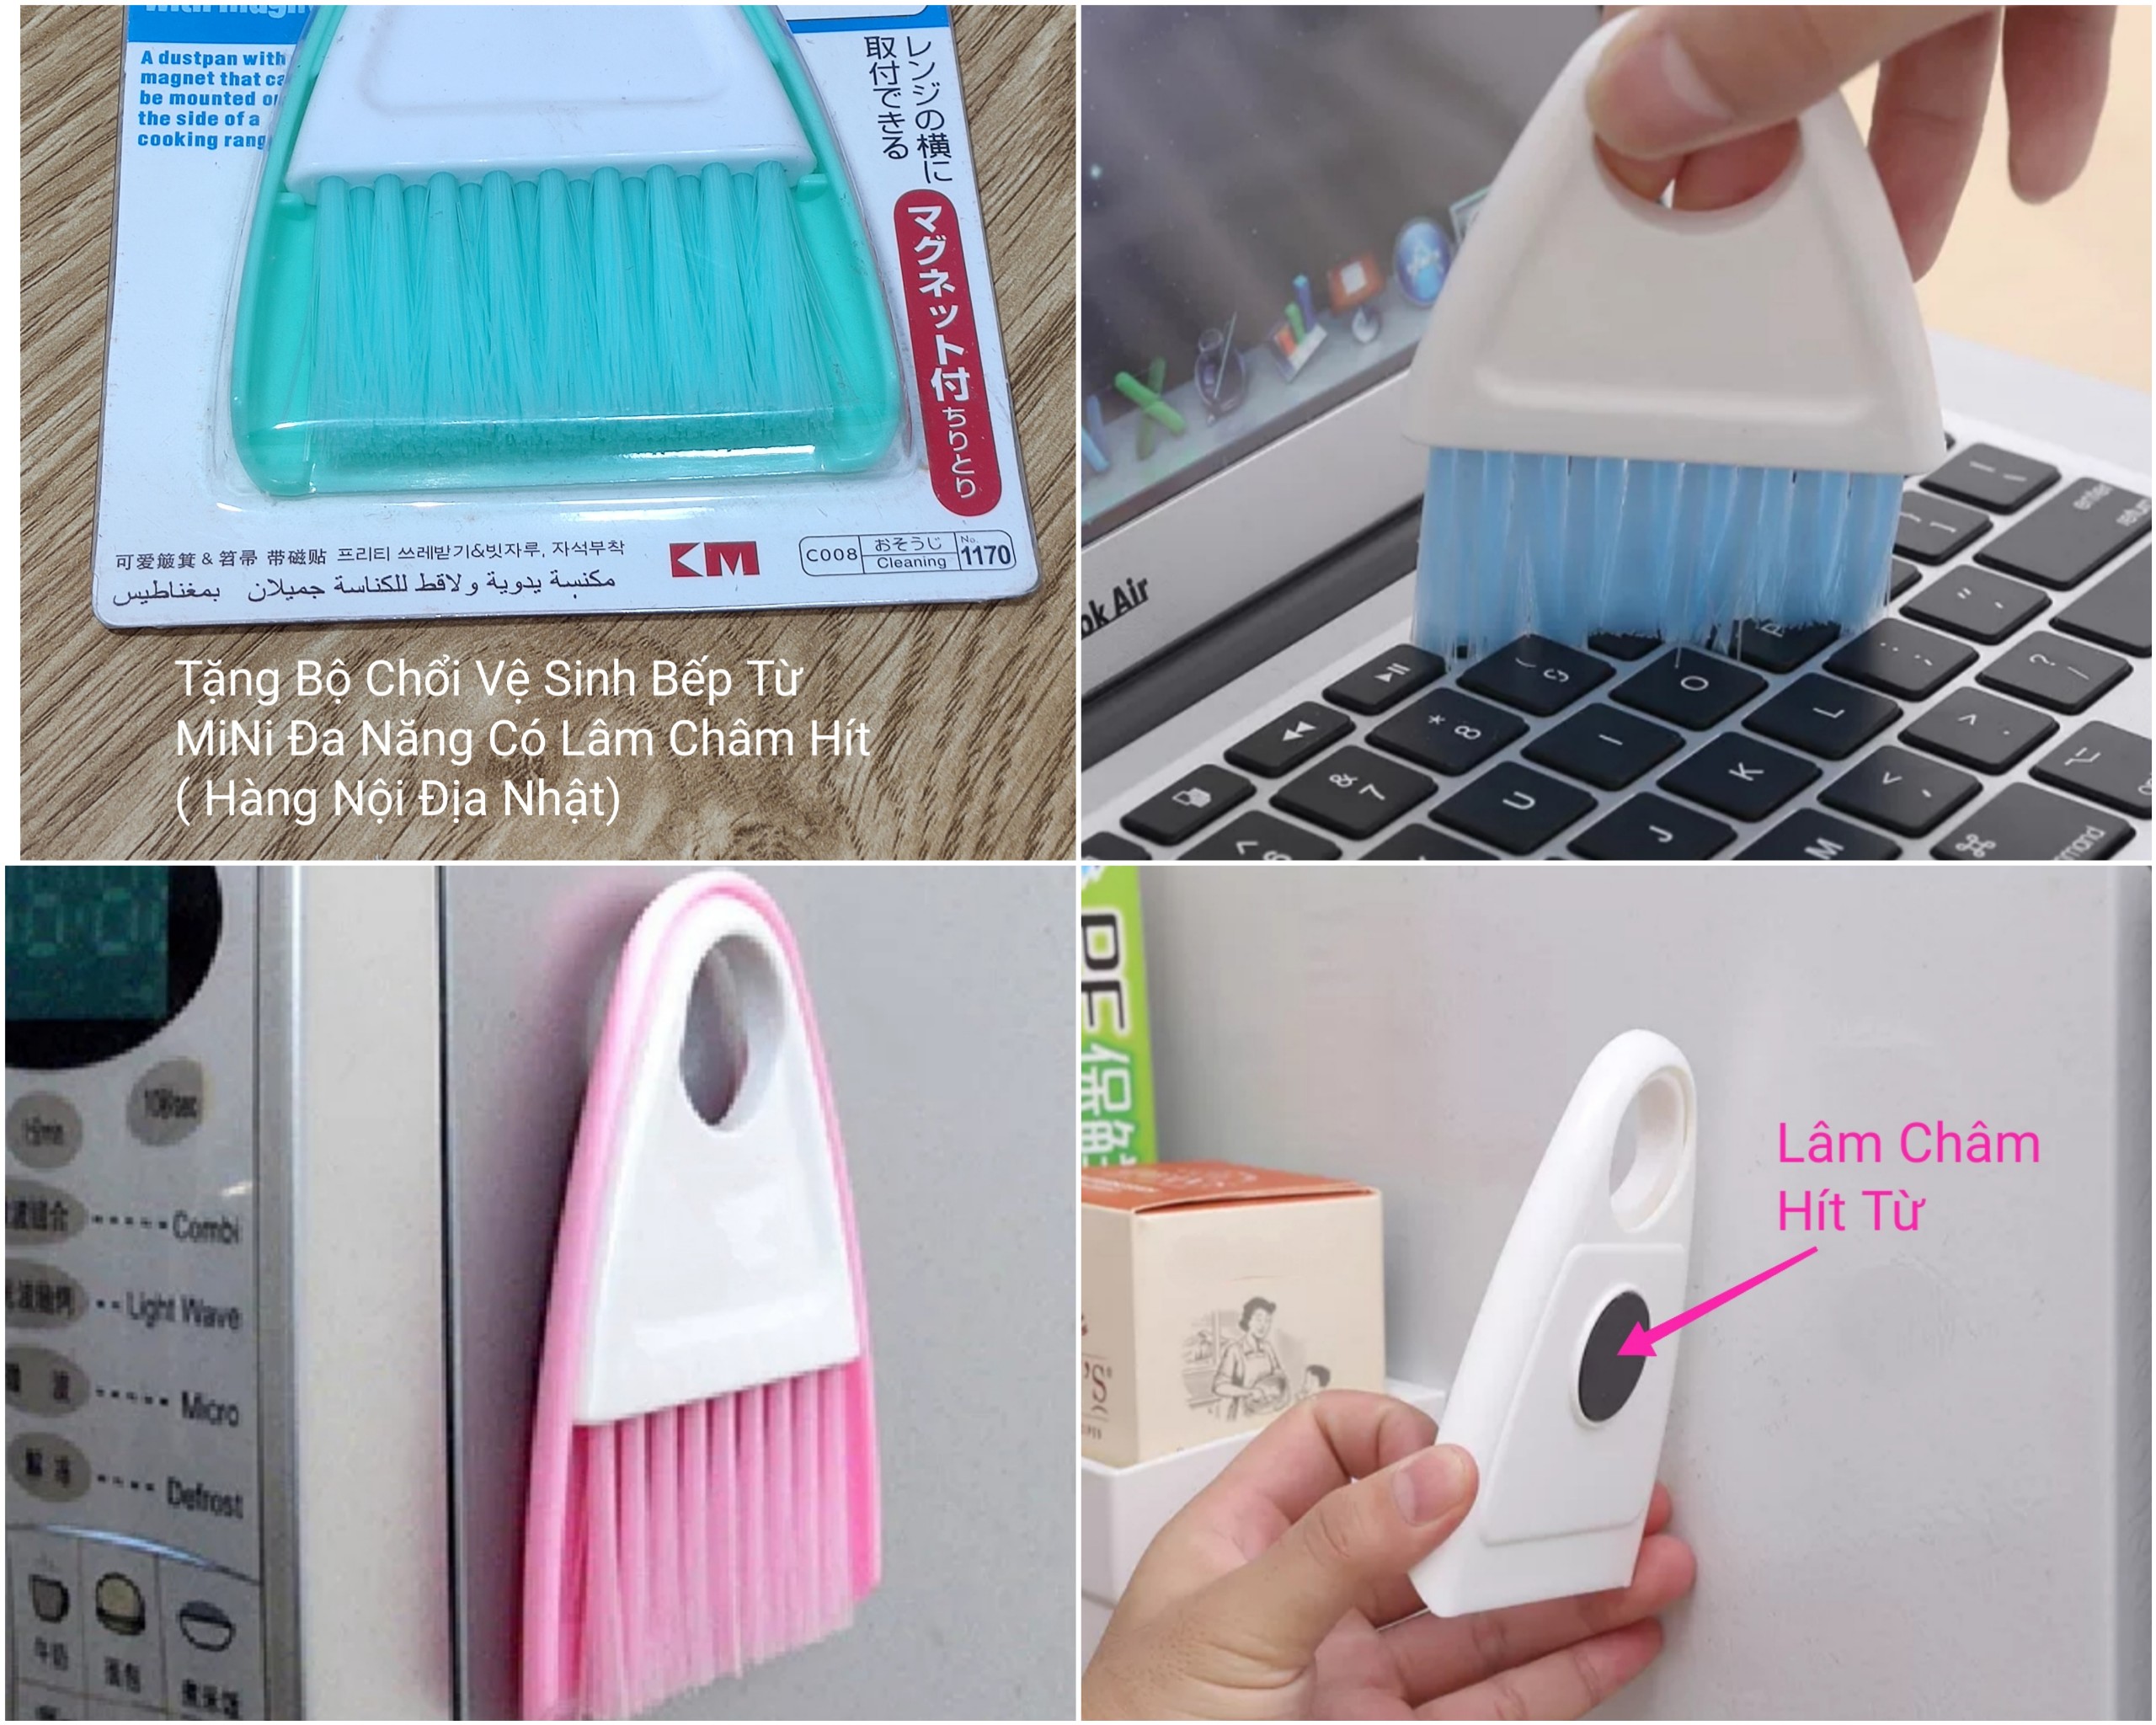 Thùng đựng gạo thông minh tặng bộ chổi vệ sinh bếp có nam châm hít thiết kế dạng nhấn nút, chất liệu ABS cao cấp (giao màu ngẫu nhiên)